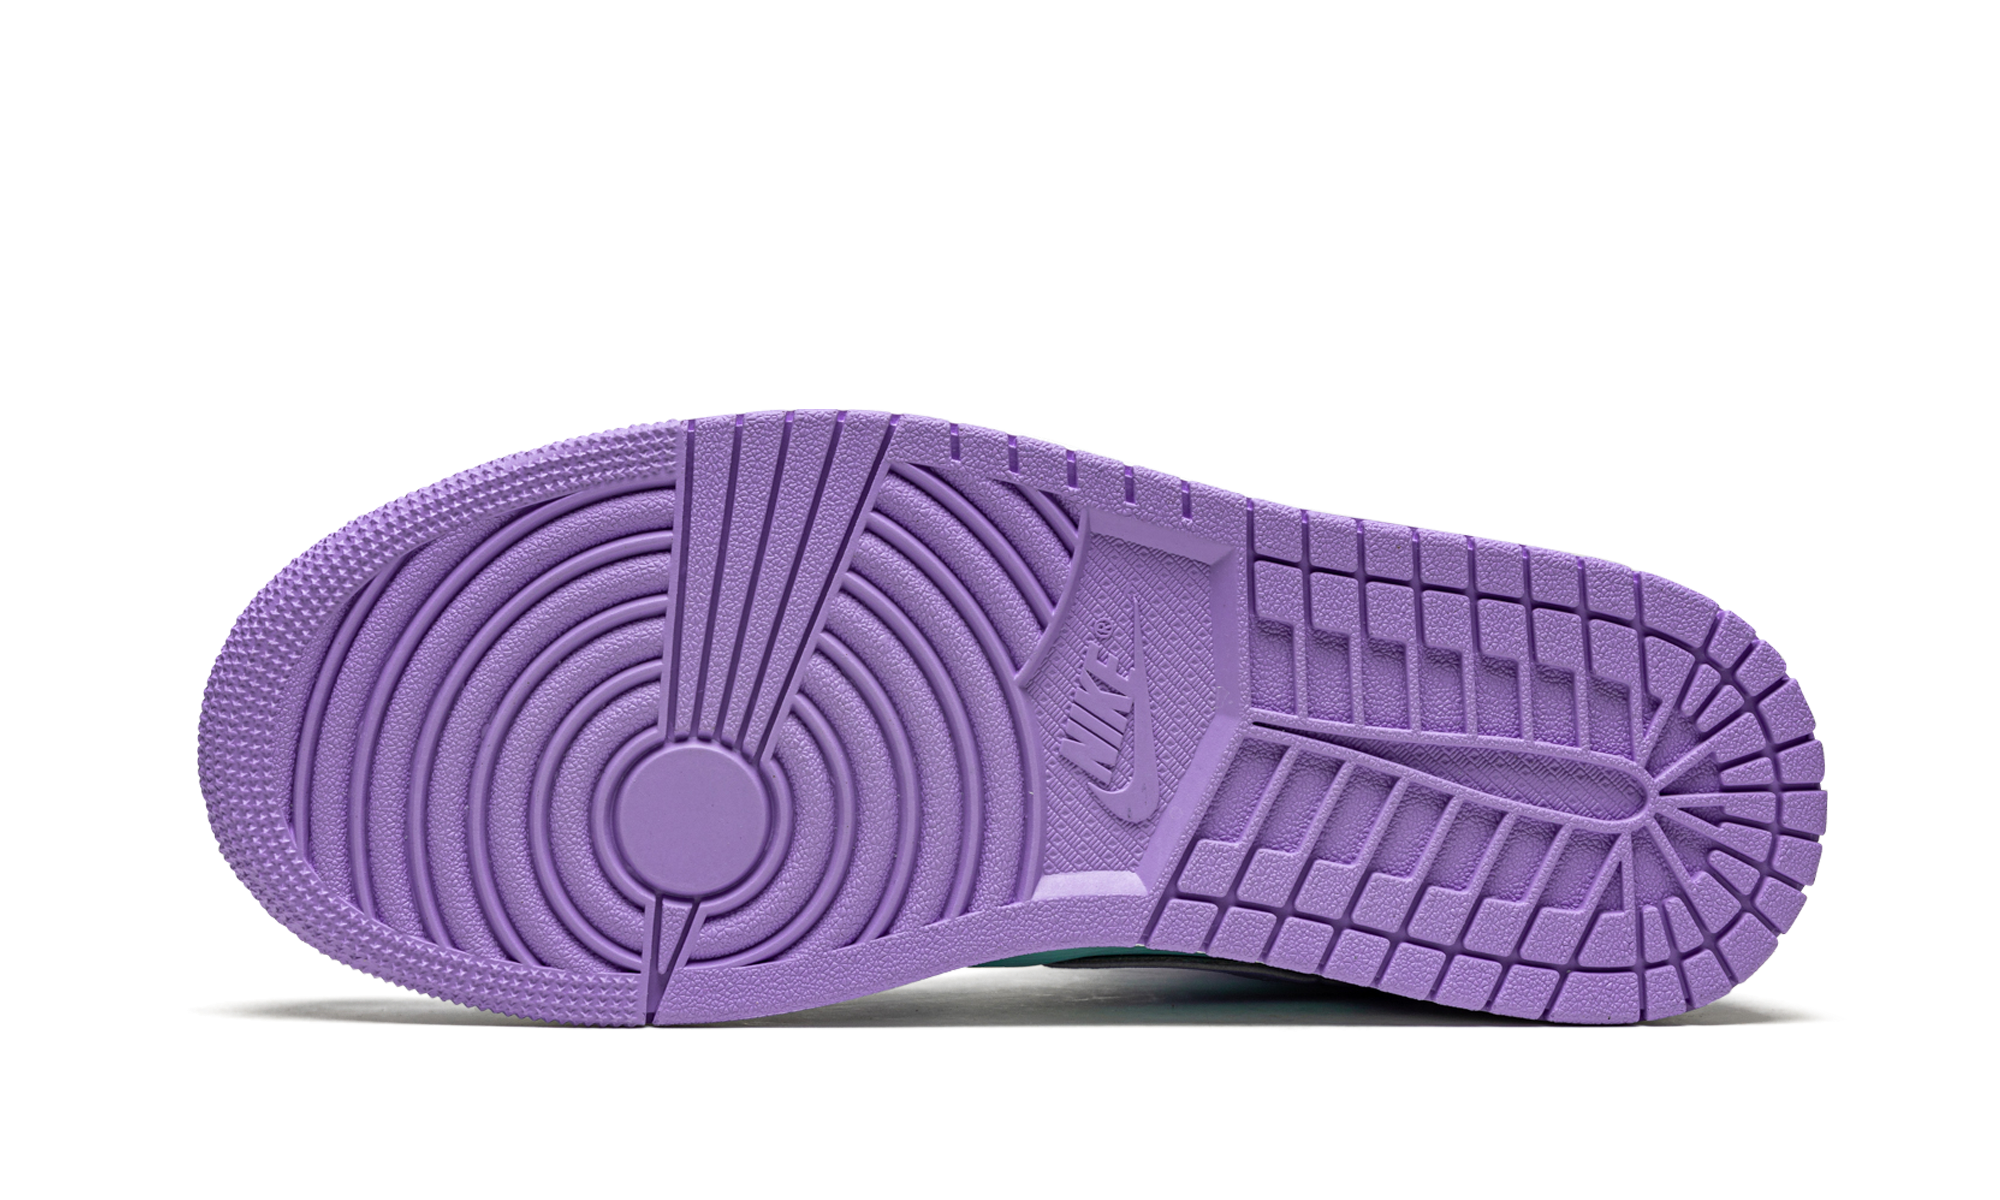 Air Jordan 1 Mid Purple Aqua